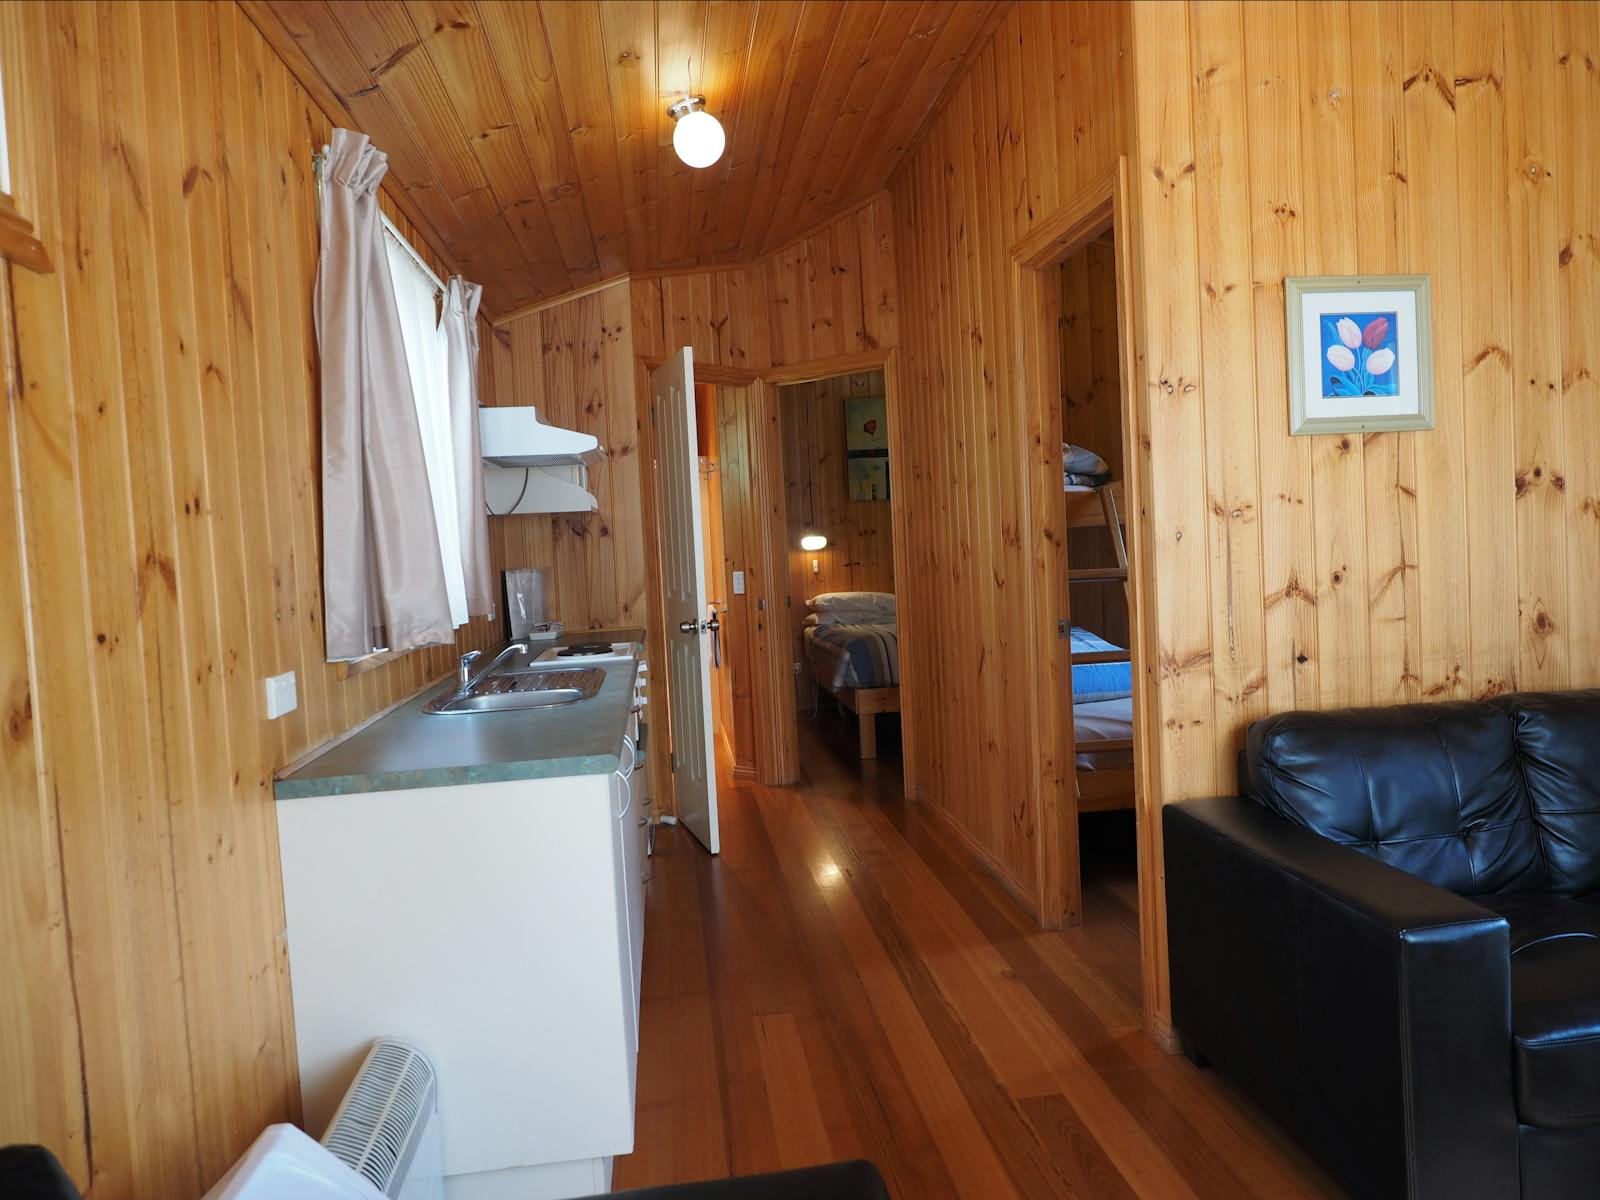 2 bedroom deluxe cabin